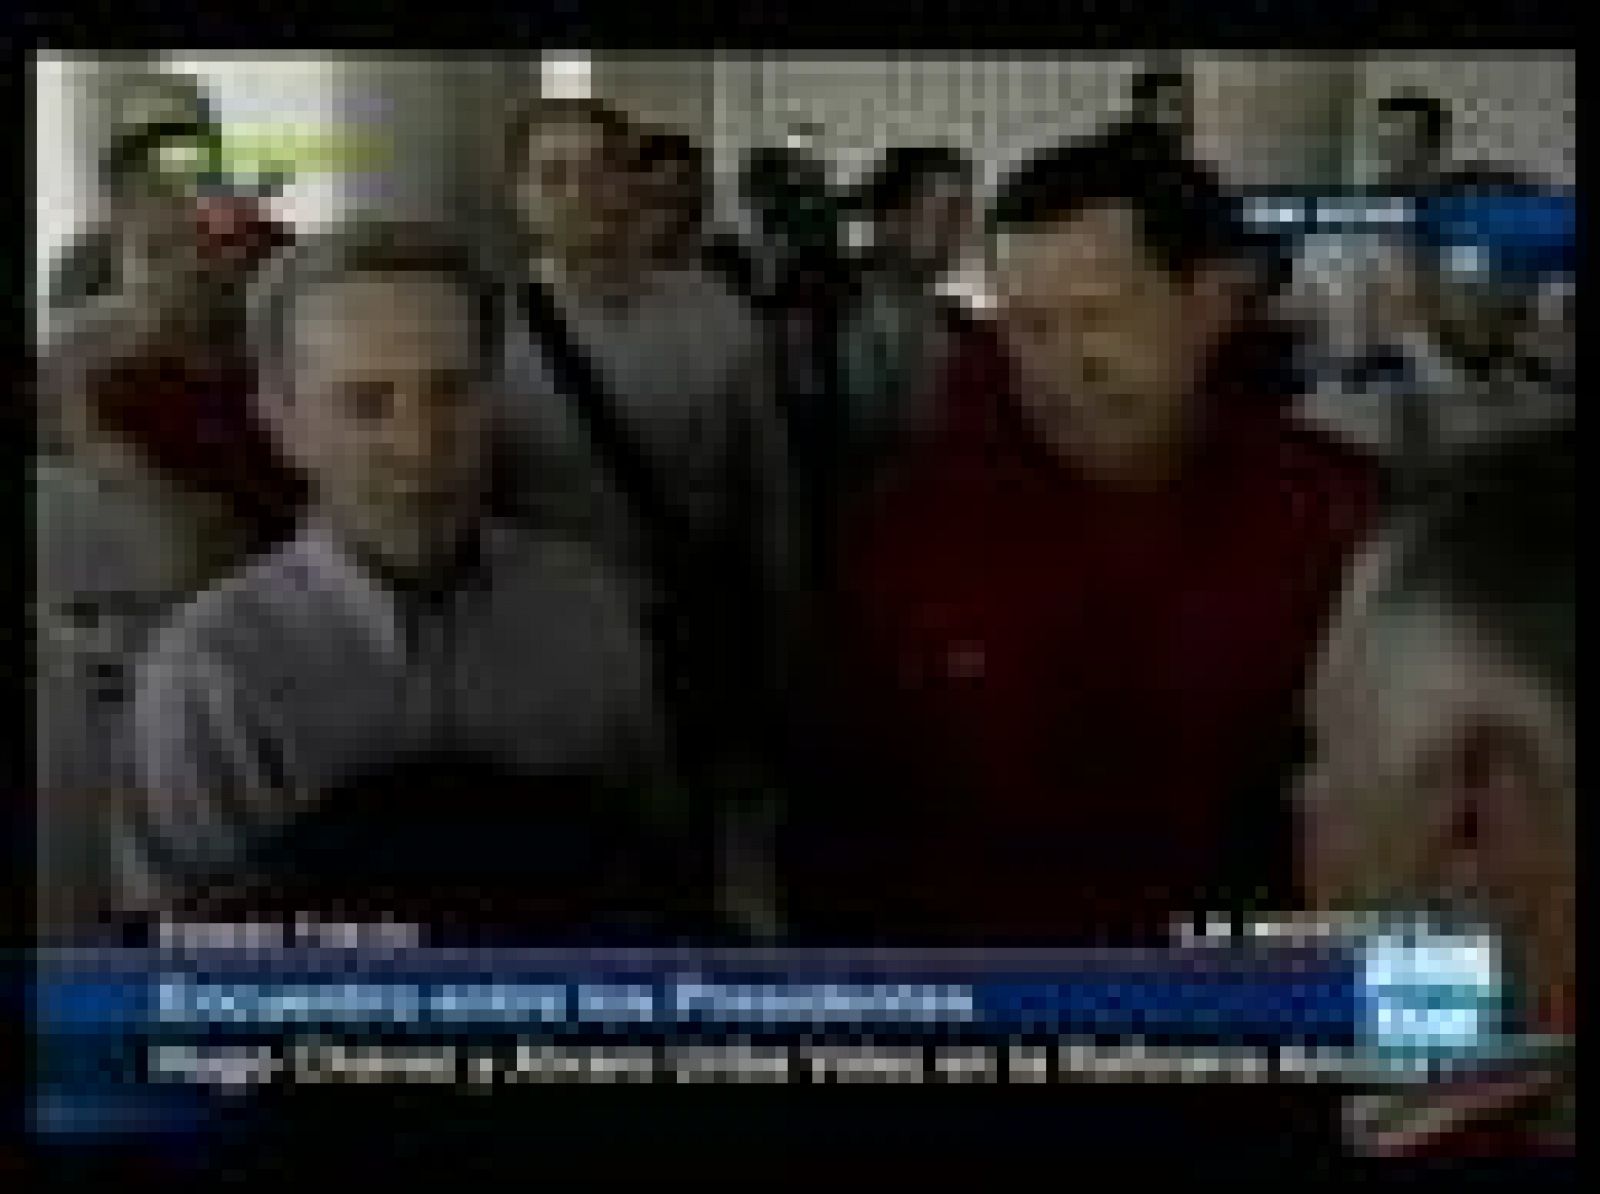   Los presidentes de Venezuela y Ecuador, Hugo Chávez y Álvaro Uribe, respectivamente, han firmado la paz tras más de ocho meses de crisis diplómatica por diferencias sobre las FARC.